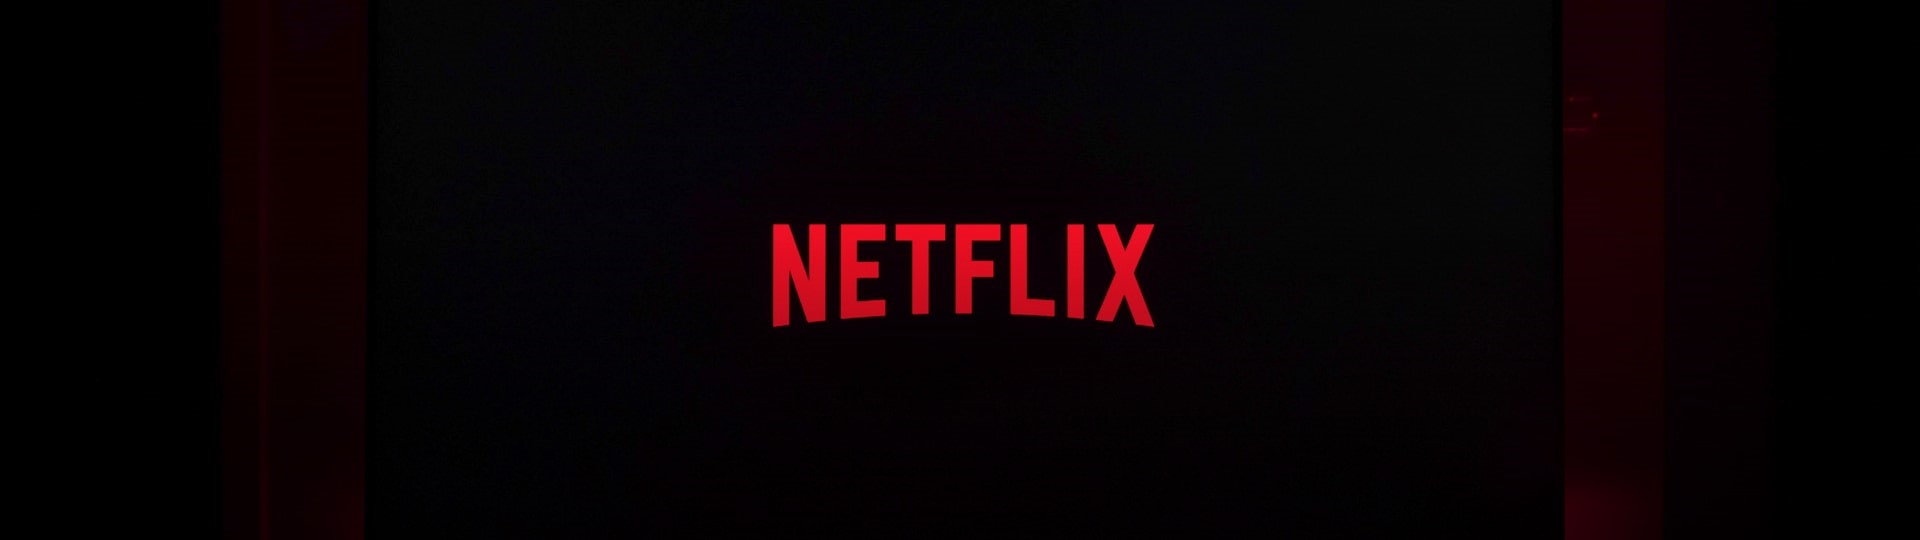 Netflix bude na internetu prodávat zboží s tematikou svých filmů a seriálů